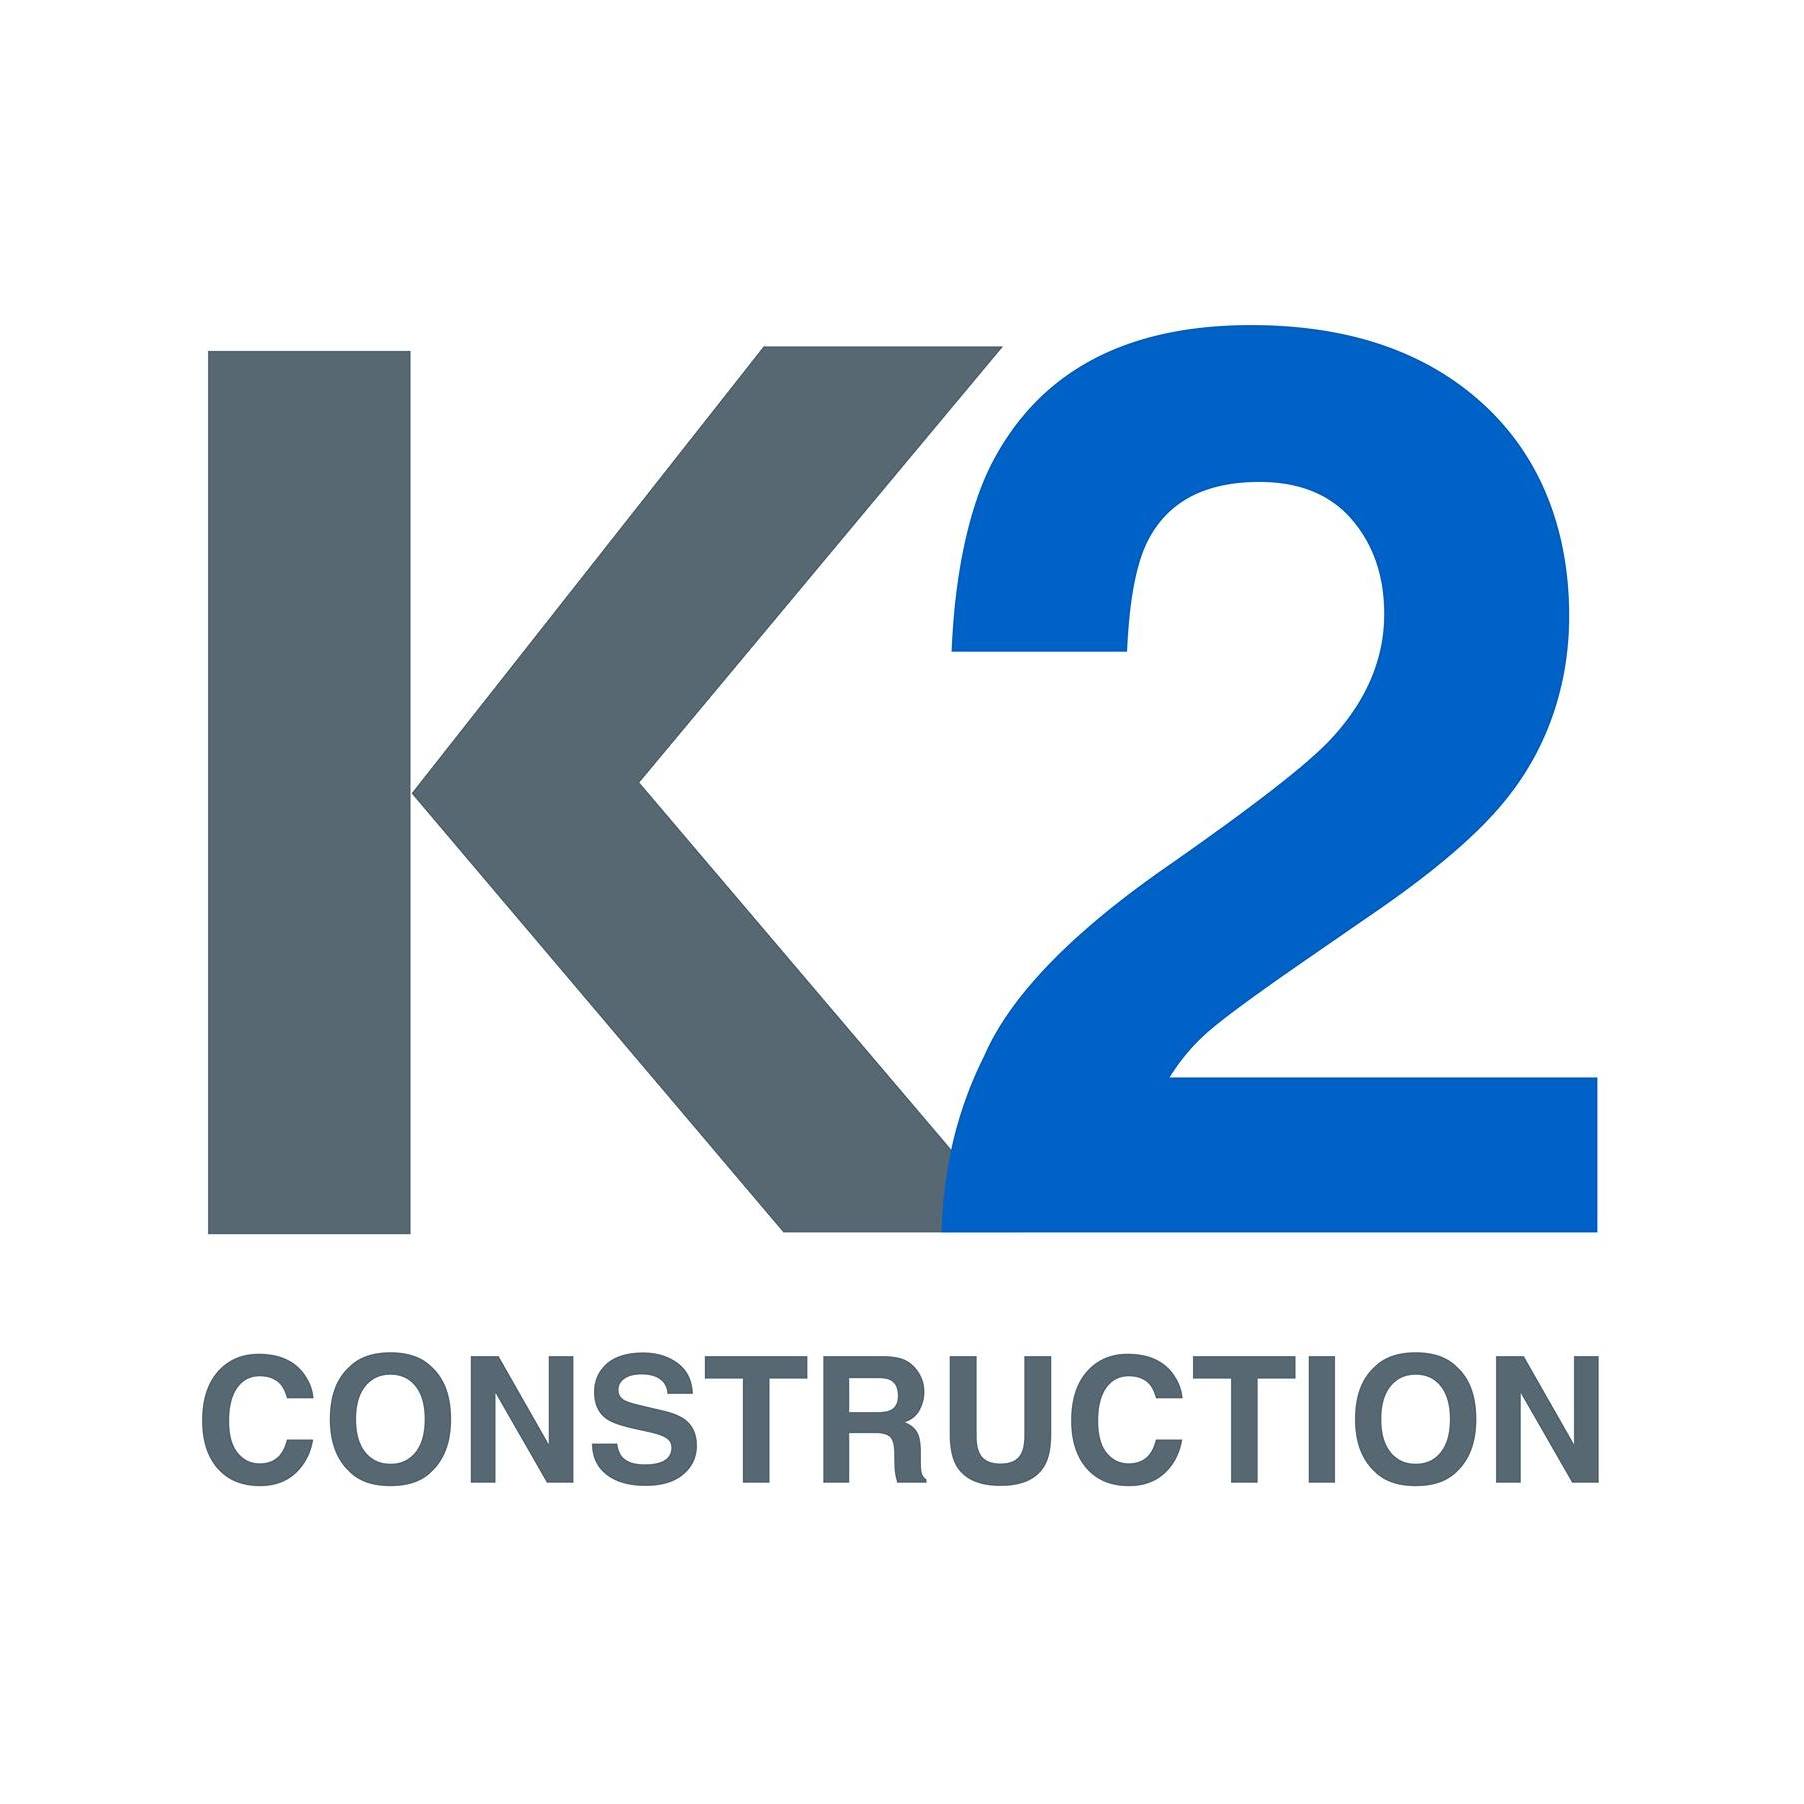 Company logo of K2 Construction